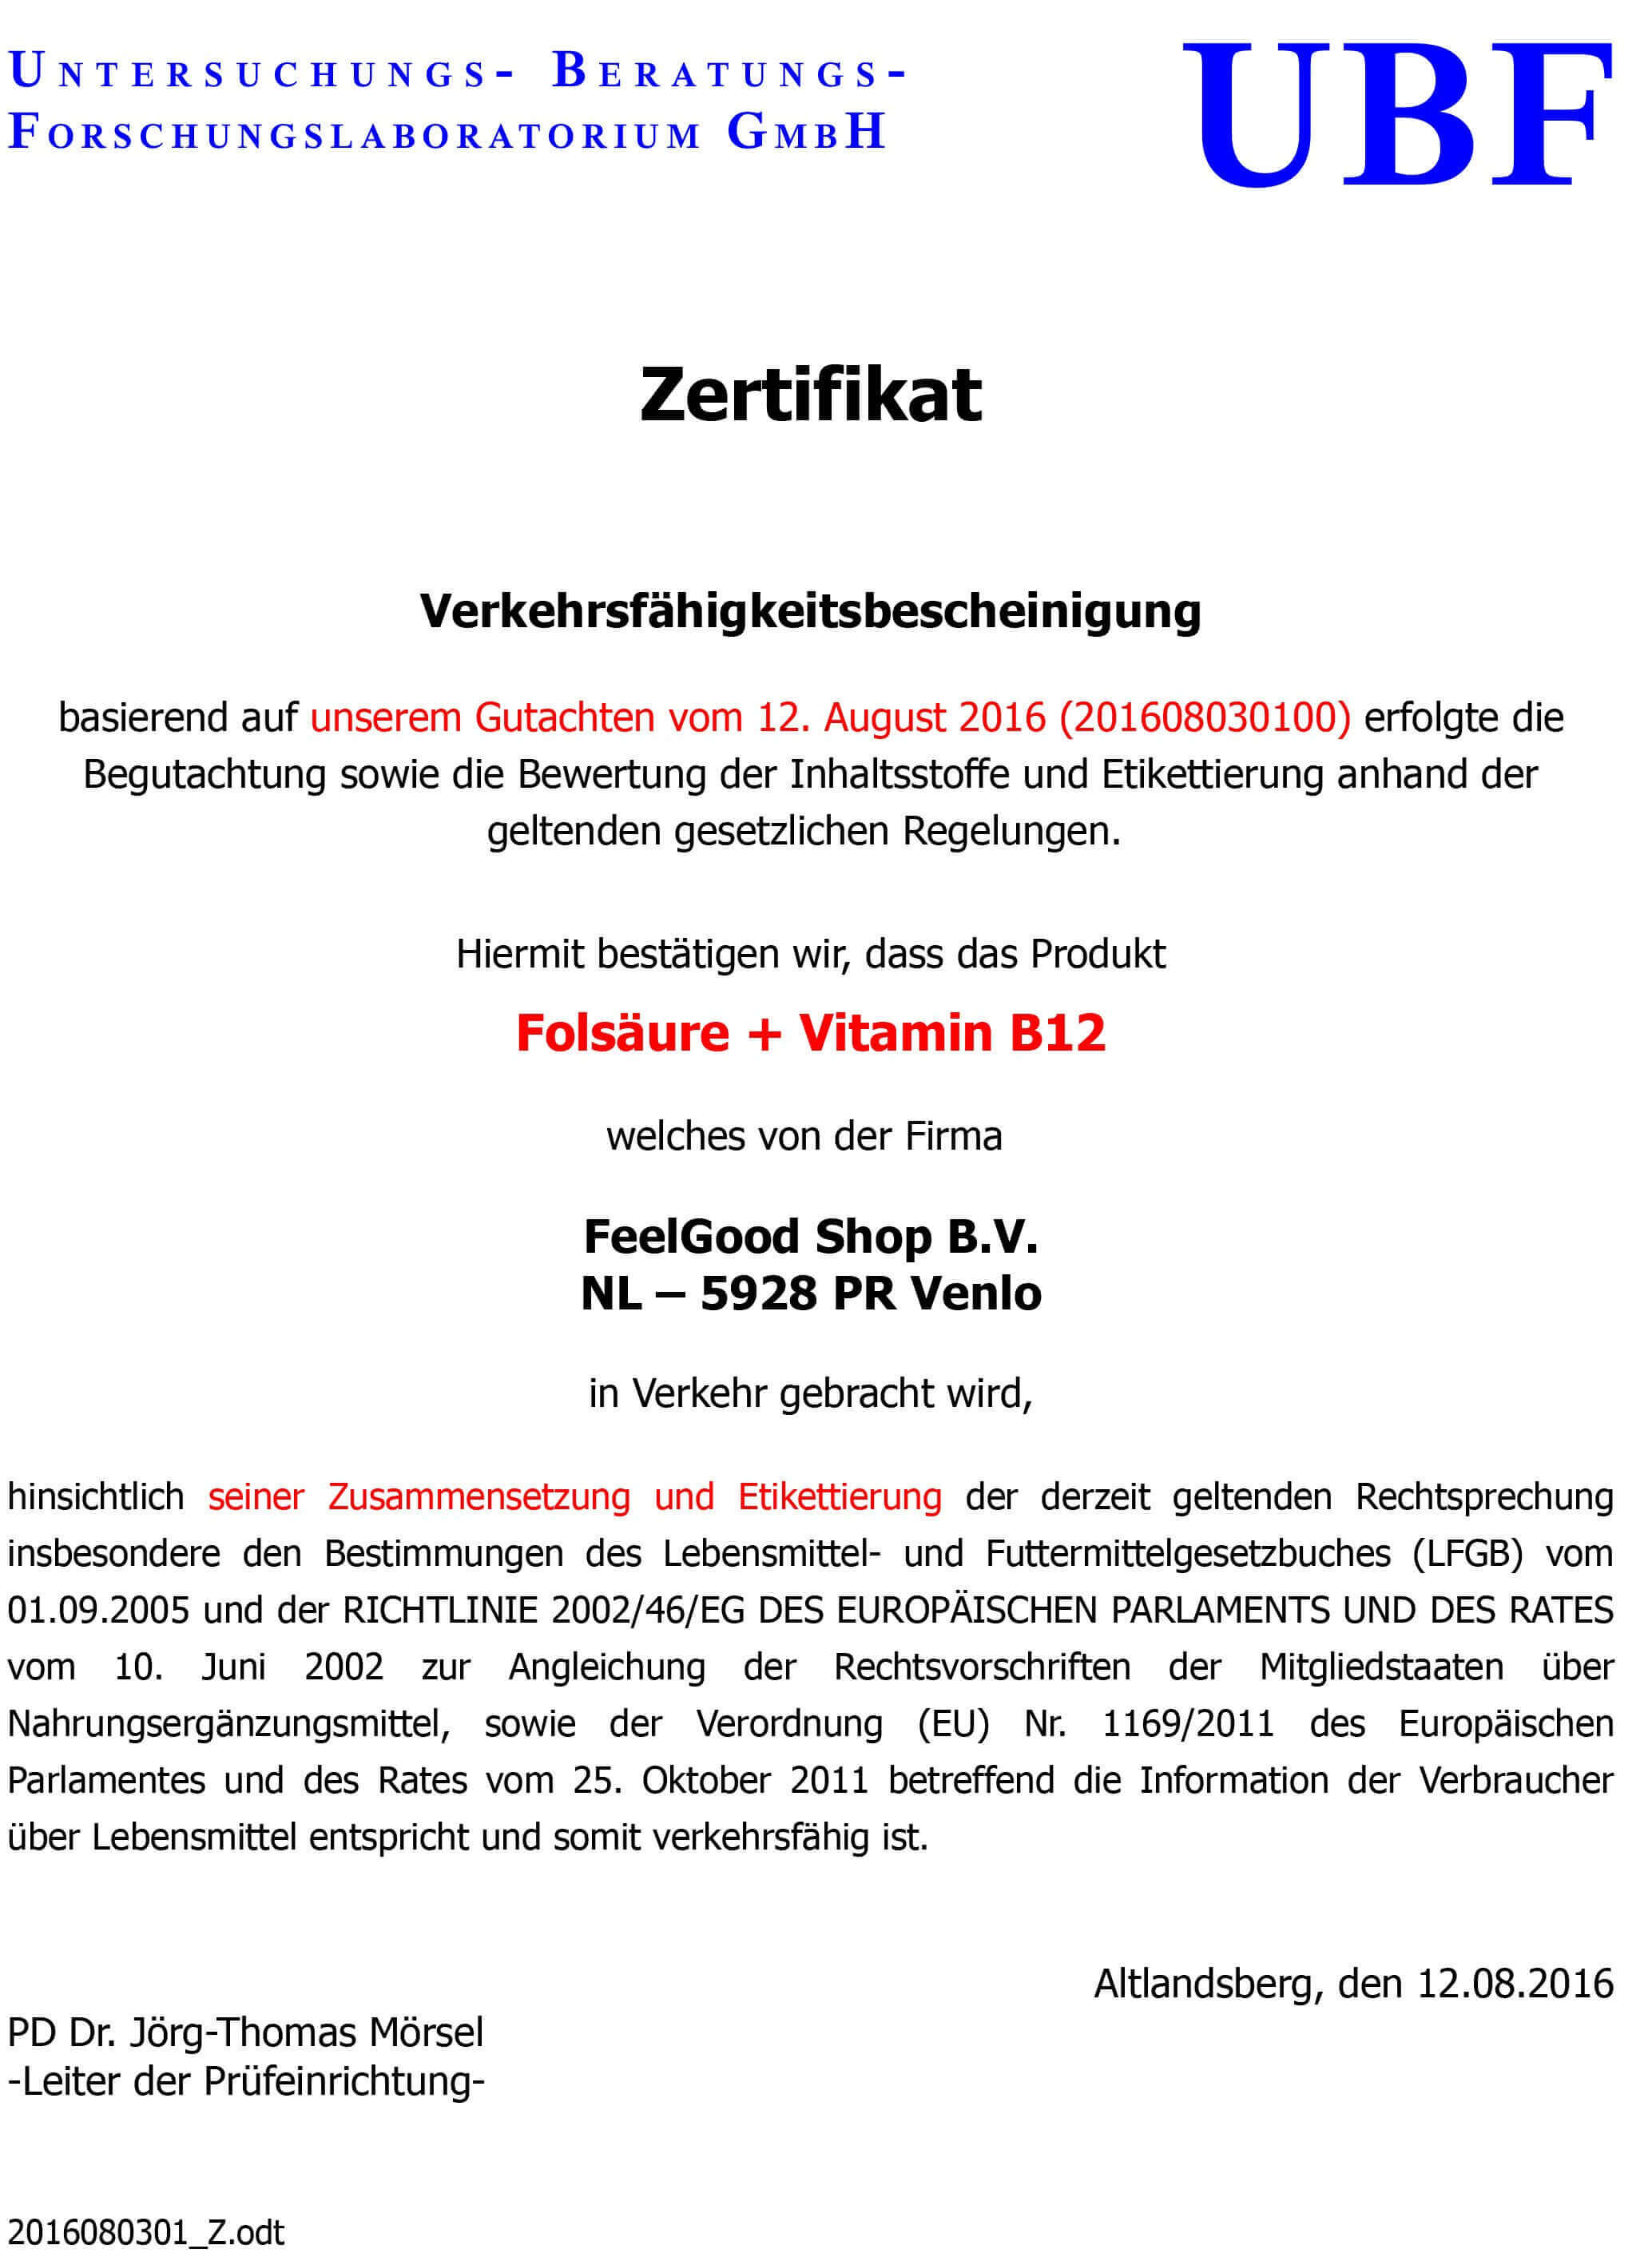 FOLSÄURE 400 + Vitamin B12 Zertifikat